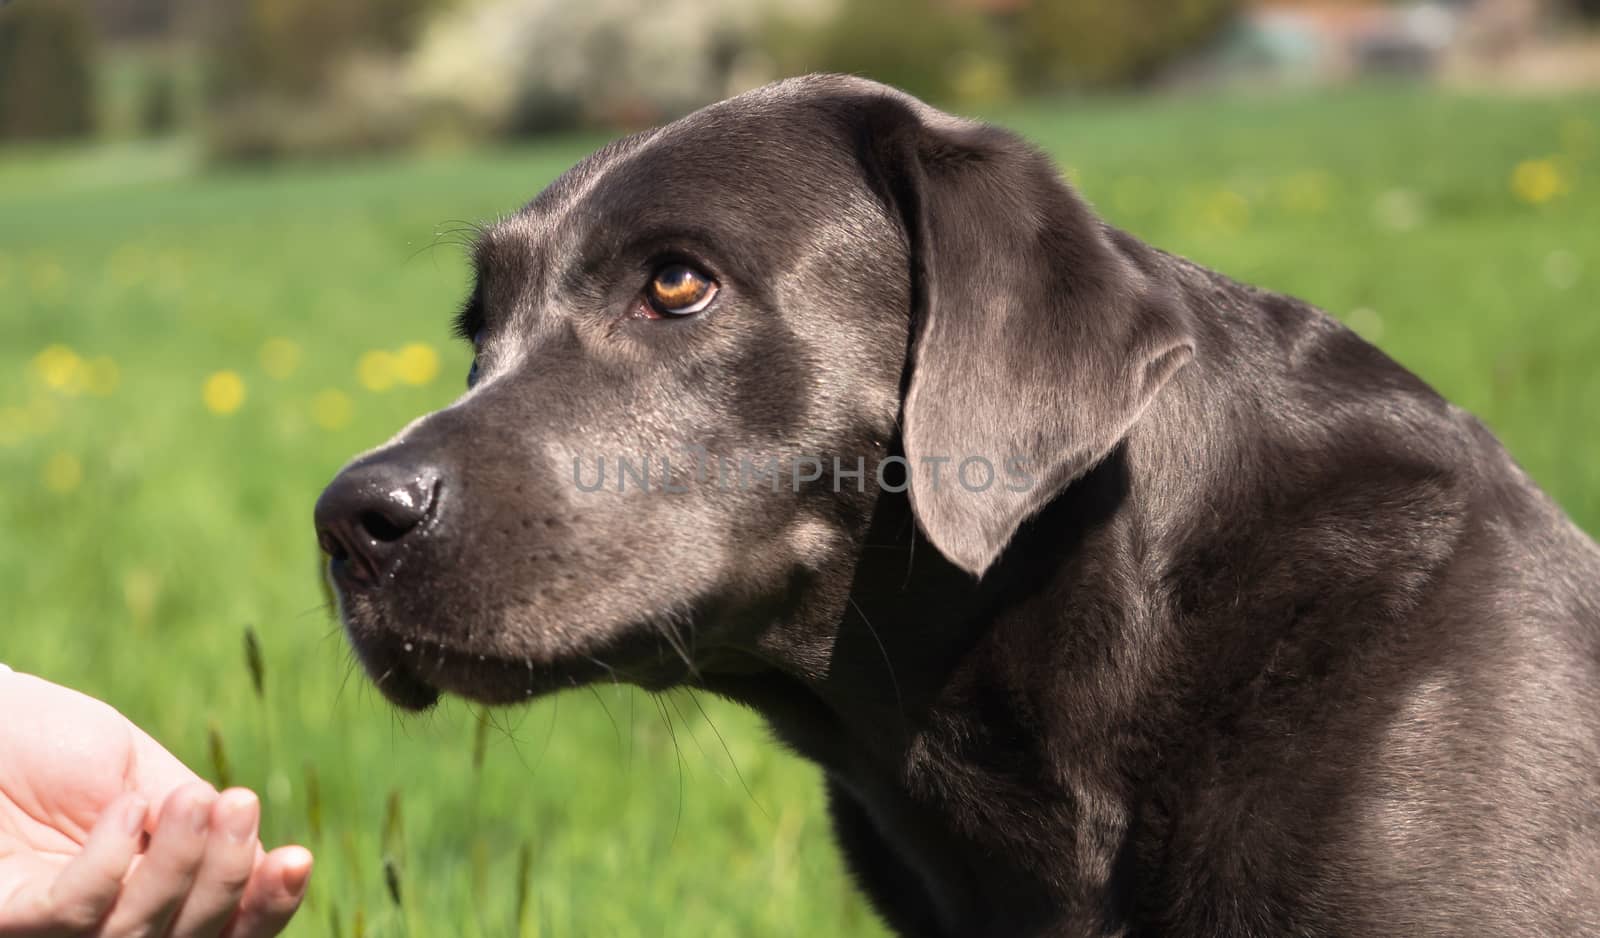 A beautiful dark Labrador Retriever plays outside